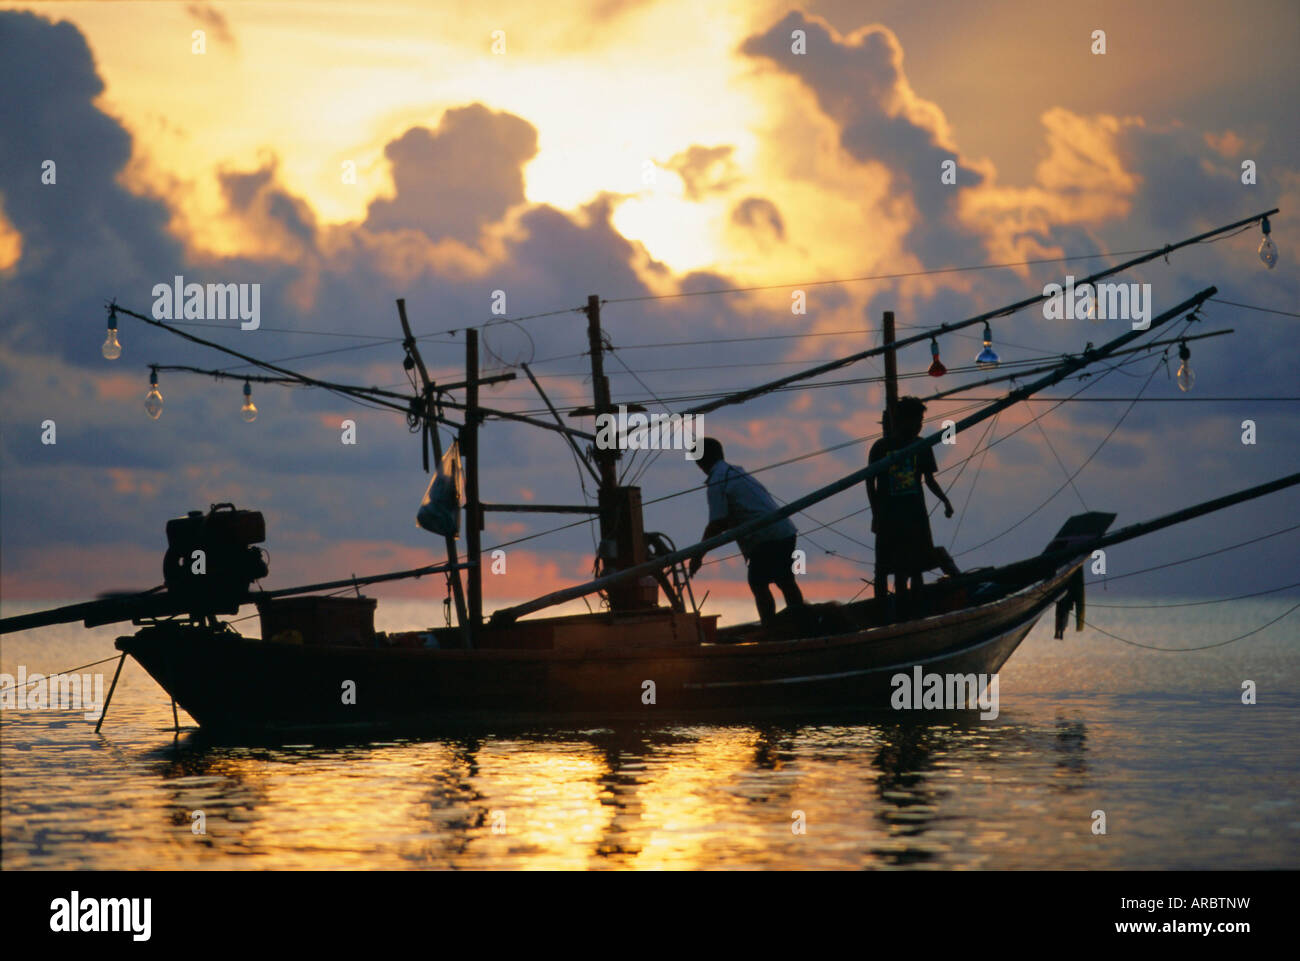 Fishing boat at sunrise at Haad Rin Beach, Koh Pha Ngan, Thailand Stock Photo